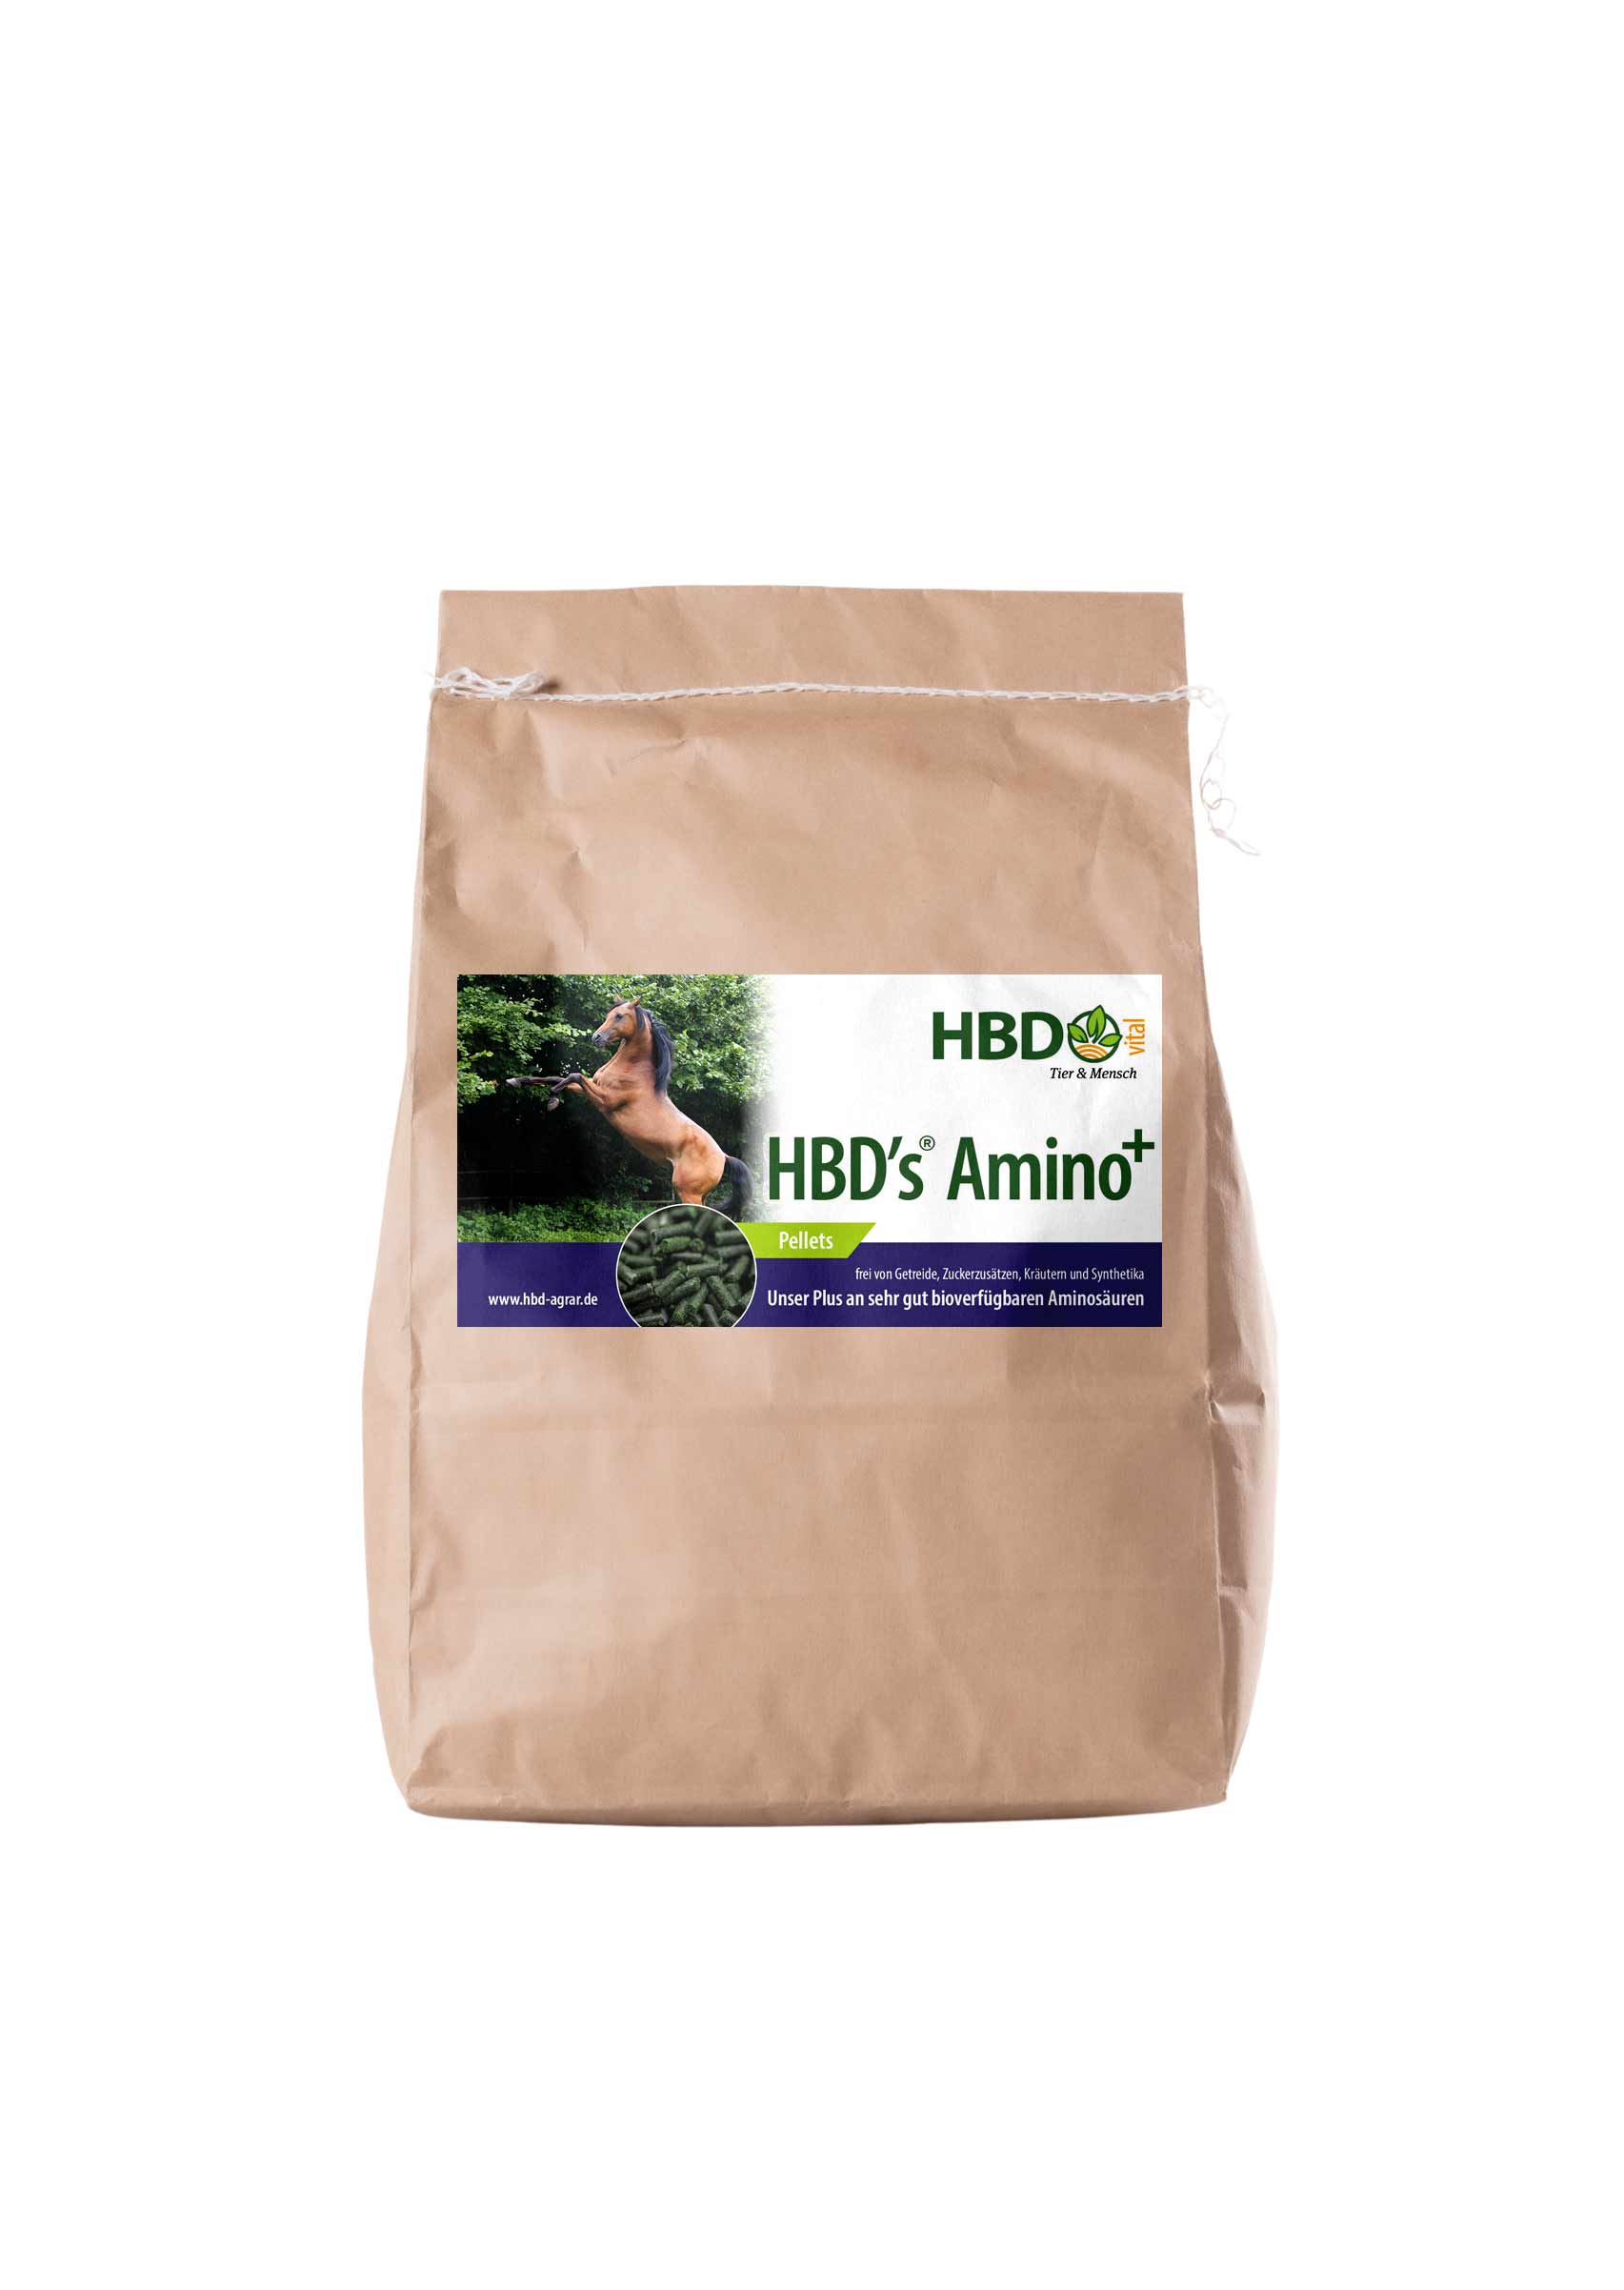 Foto des Futtersacks für HBD’s Amino+ - Ein hellbrauner Futtersack mit dem Etikett von HBD’s Amino+ ist zu sehen.